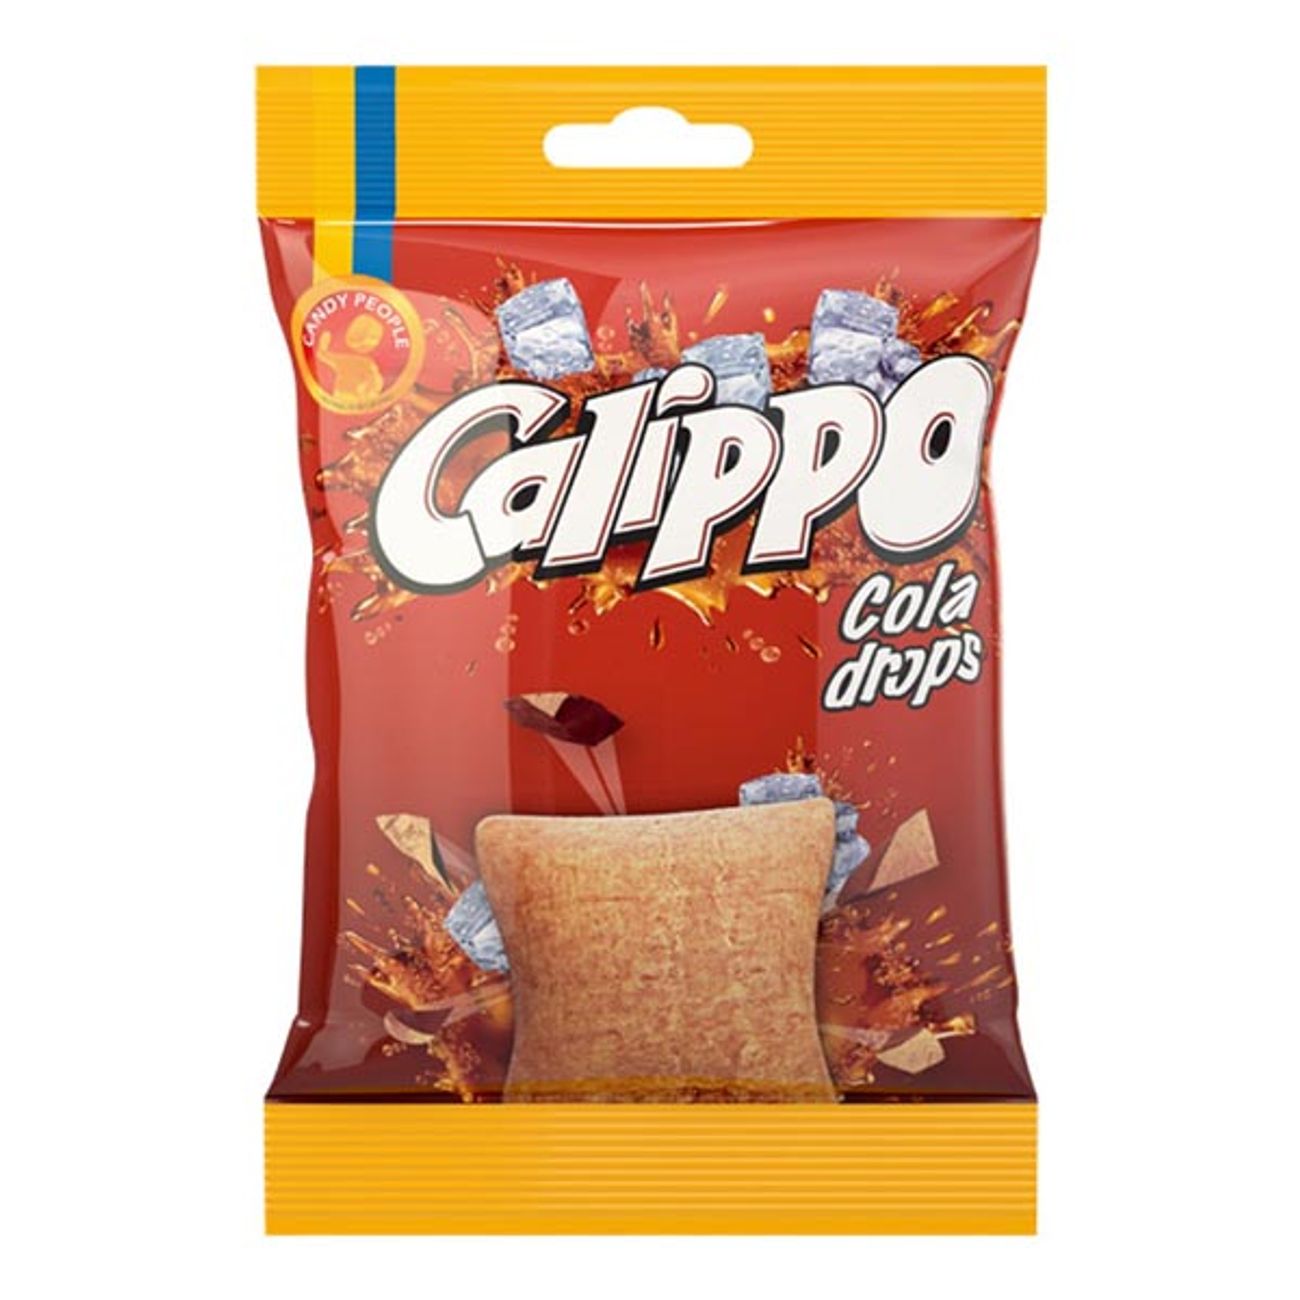 calippo-cola-godispase-1